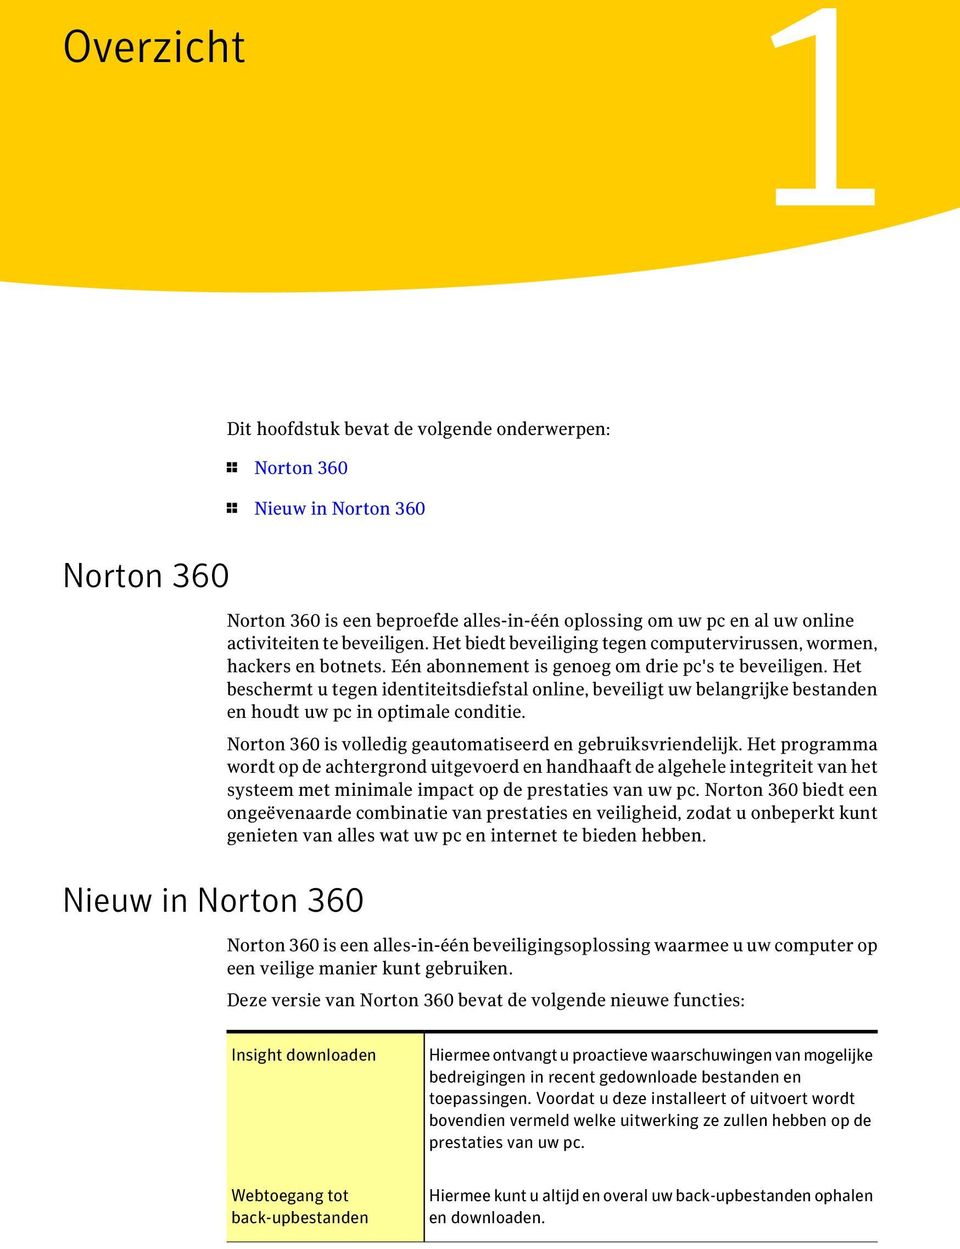 Het beschermt u tegen identiteitsdiefstal online, beveiligt uw belangrijke bestanden en houdt uw pc in optimale conditie. Norton 360 is volledig geautomatiseerd en gebruiksvriendelijk.